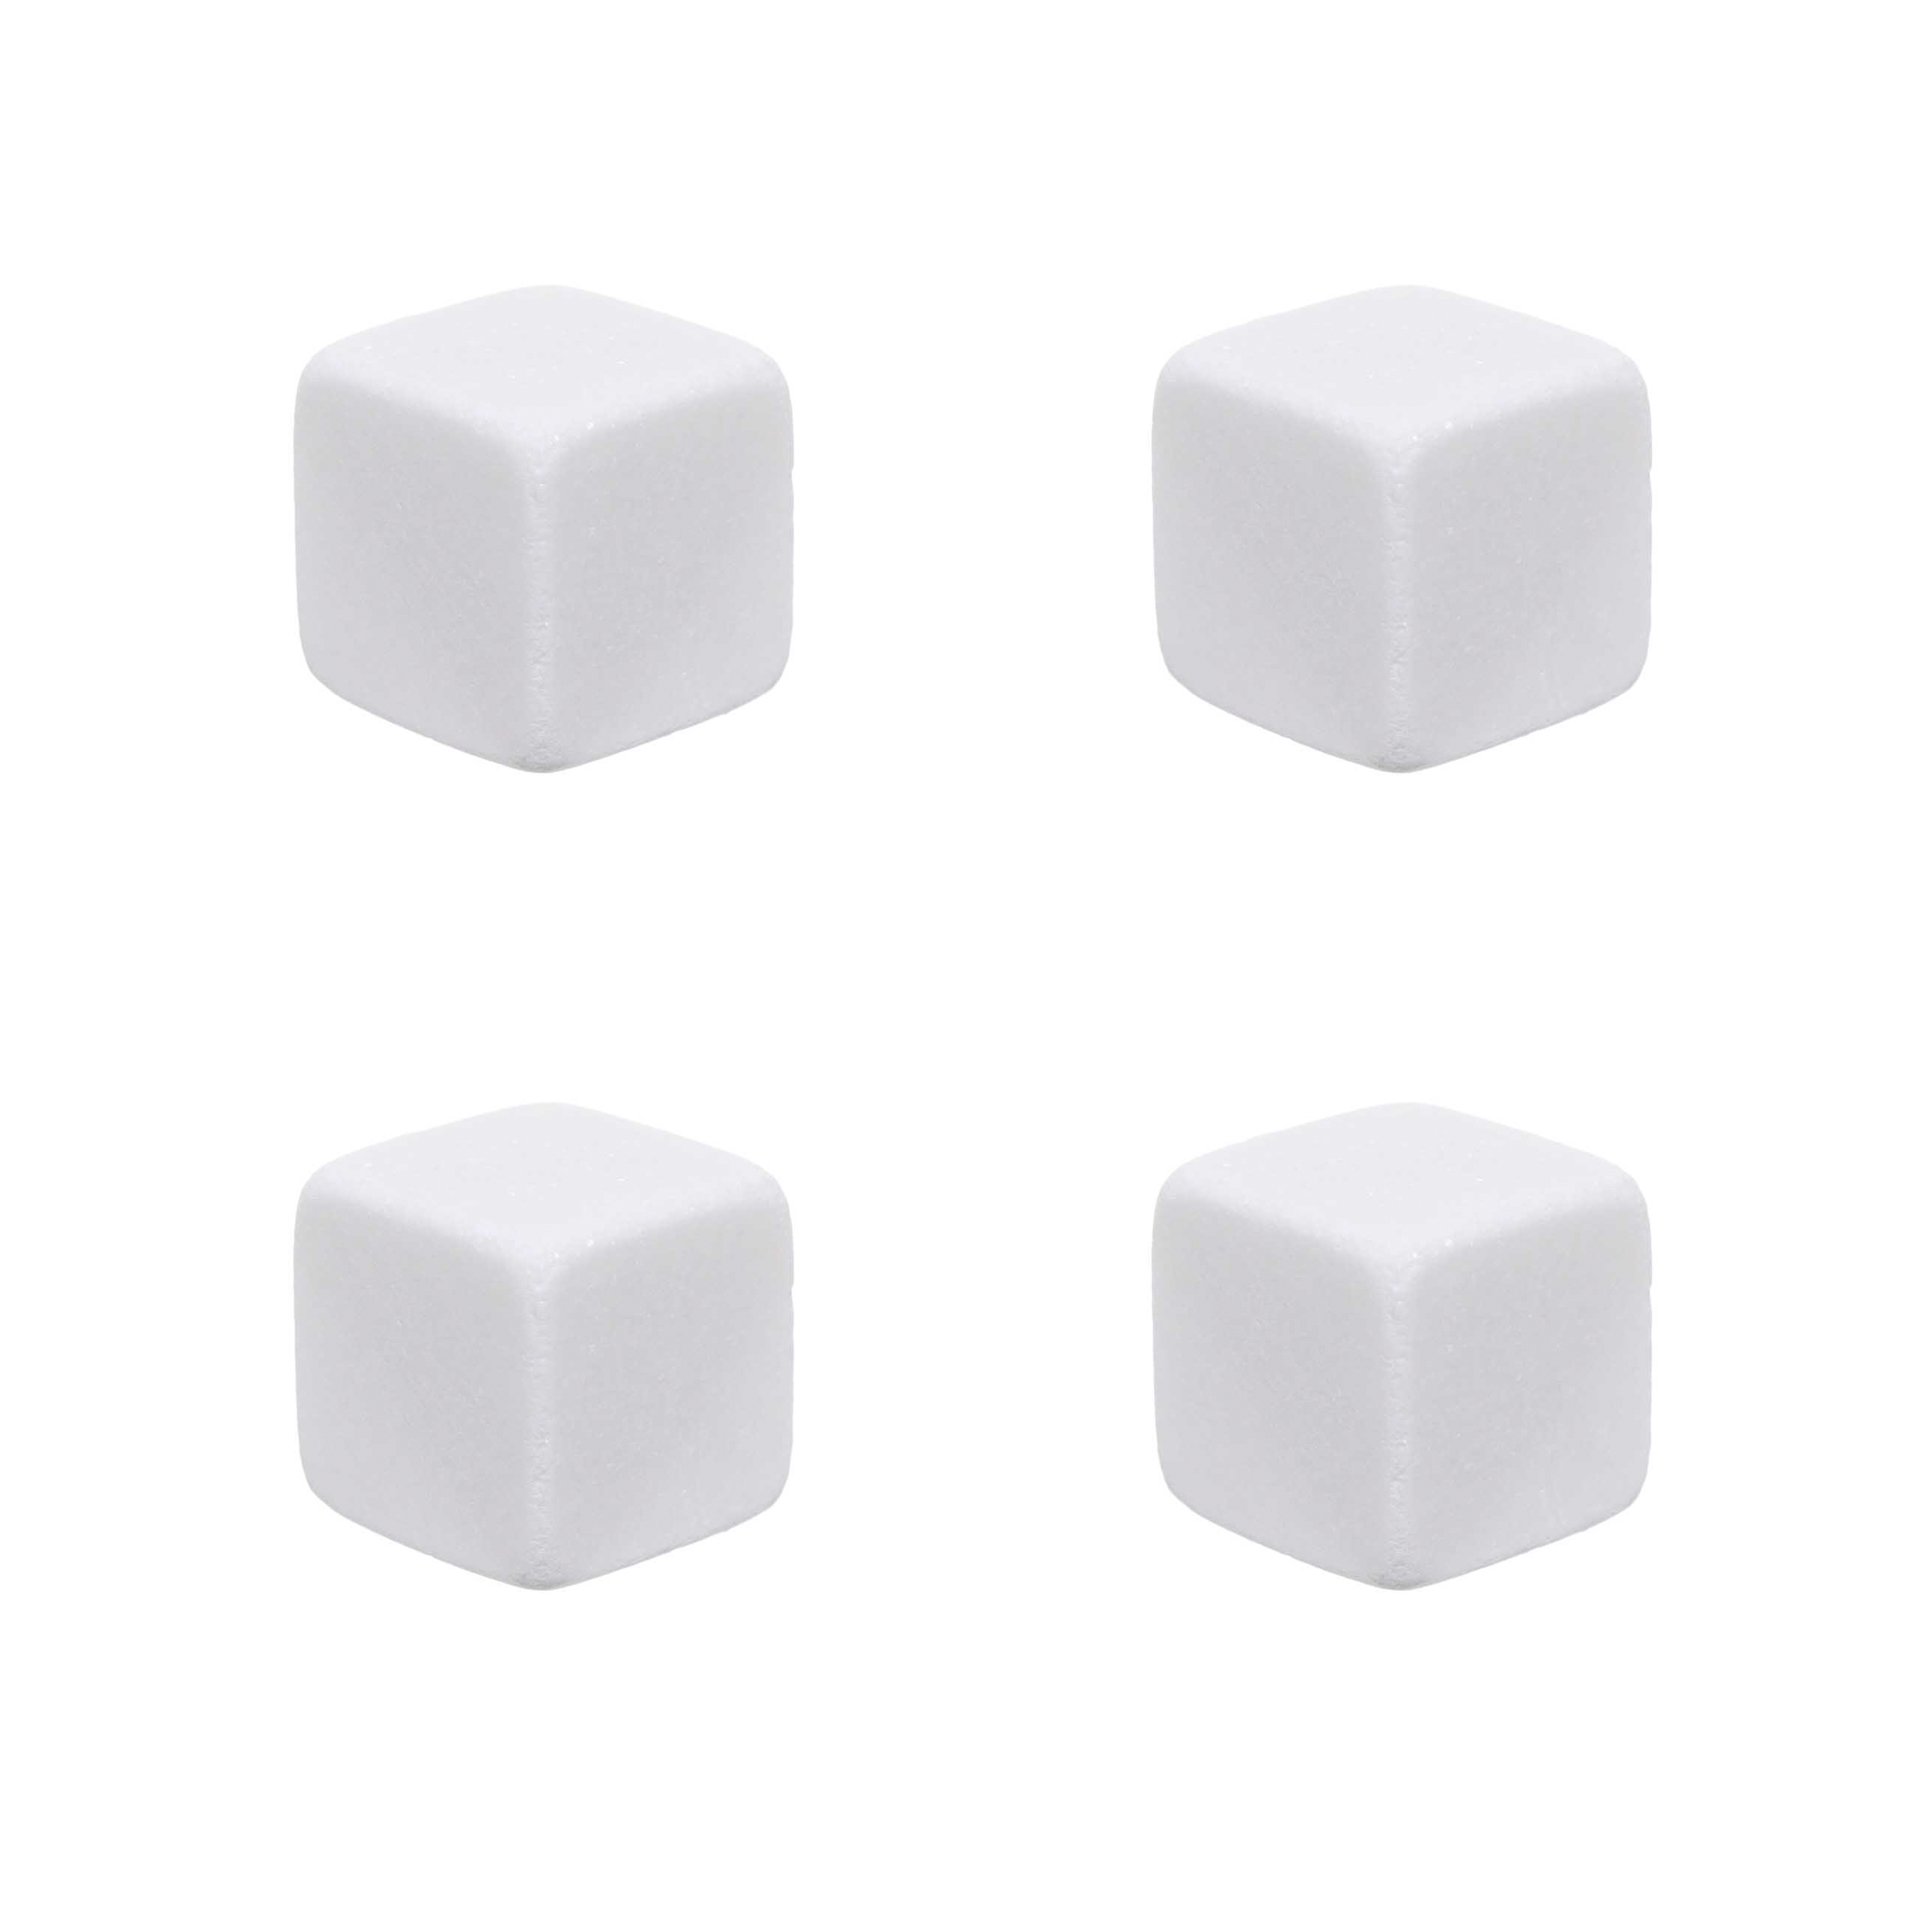 Набор кубиков для охлаждения напитков, 5 пр, с щипцами, в боксе, мрамор/сталь, Marble изображение № 4